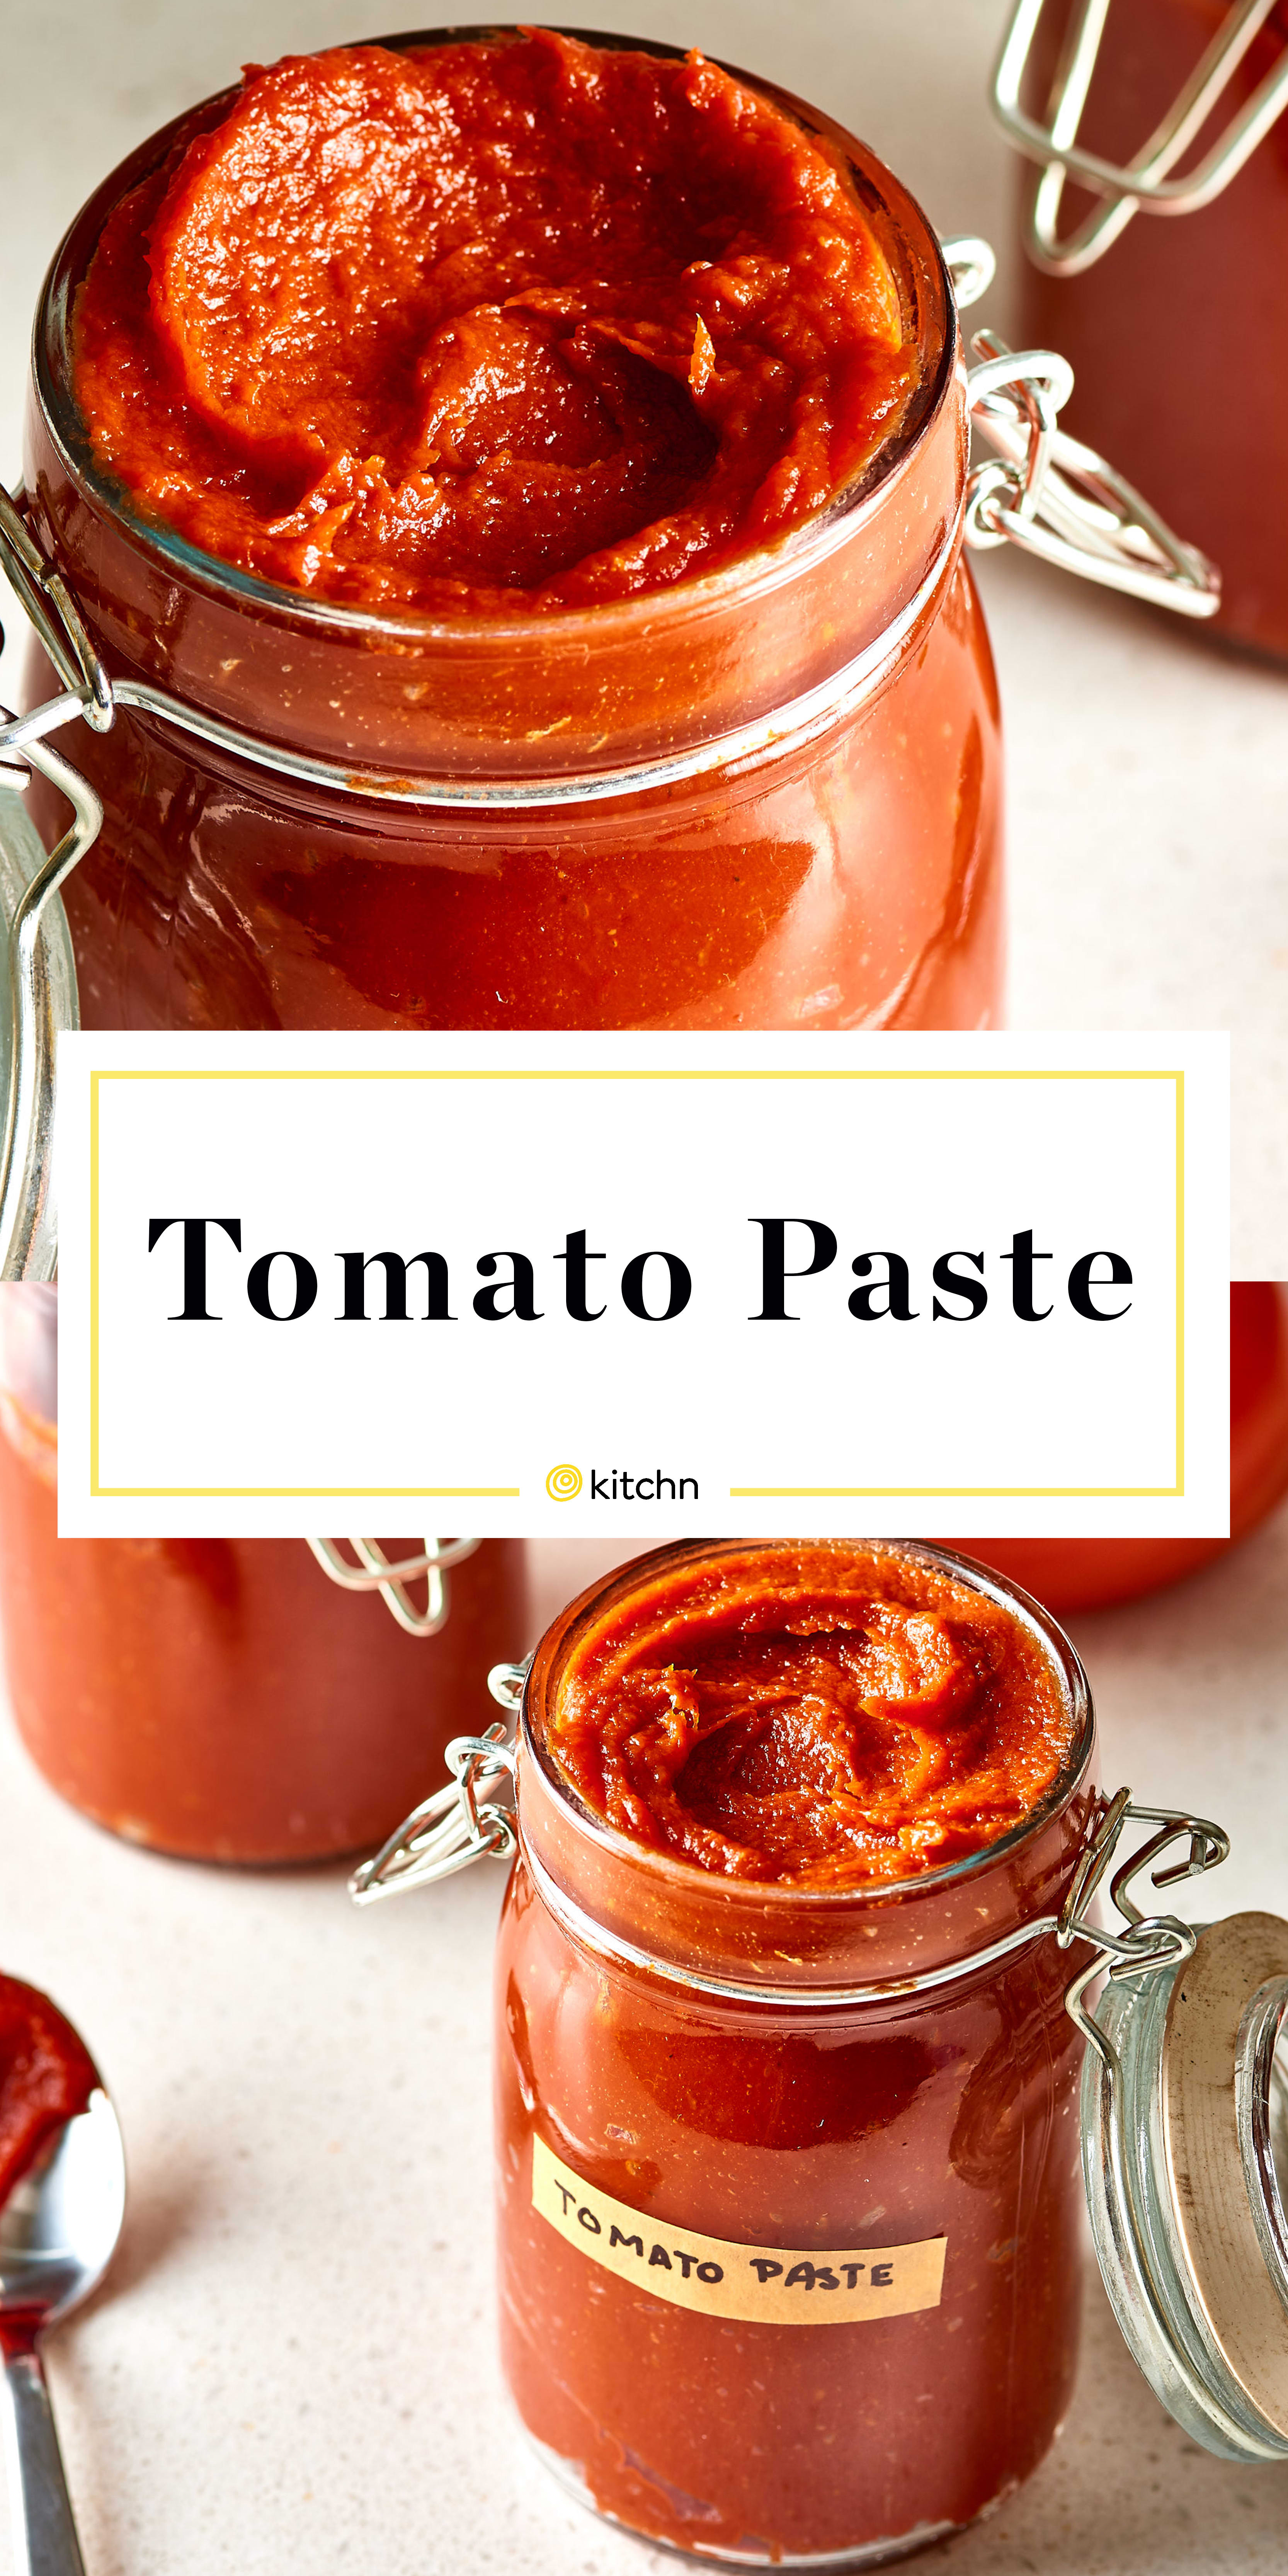 How To Make Tomato Paste - Homemade Tomato Paste | Kitchn